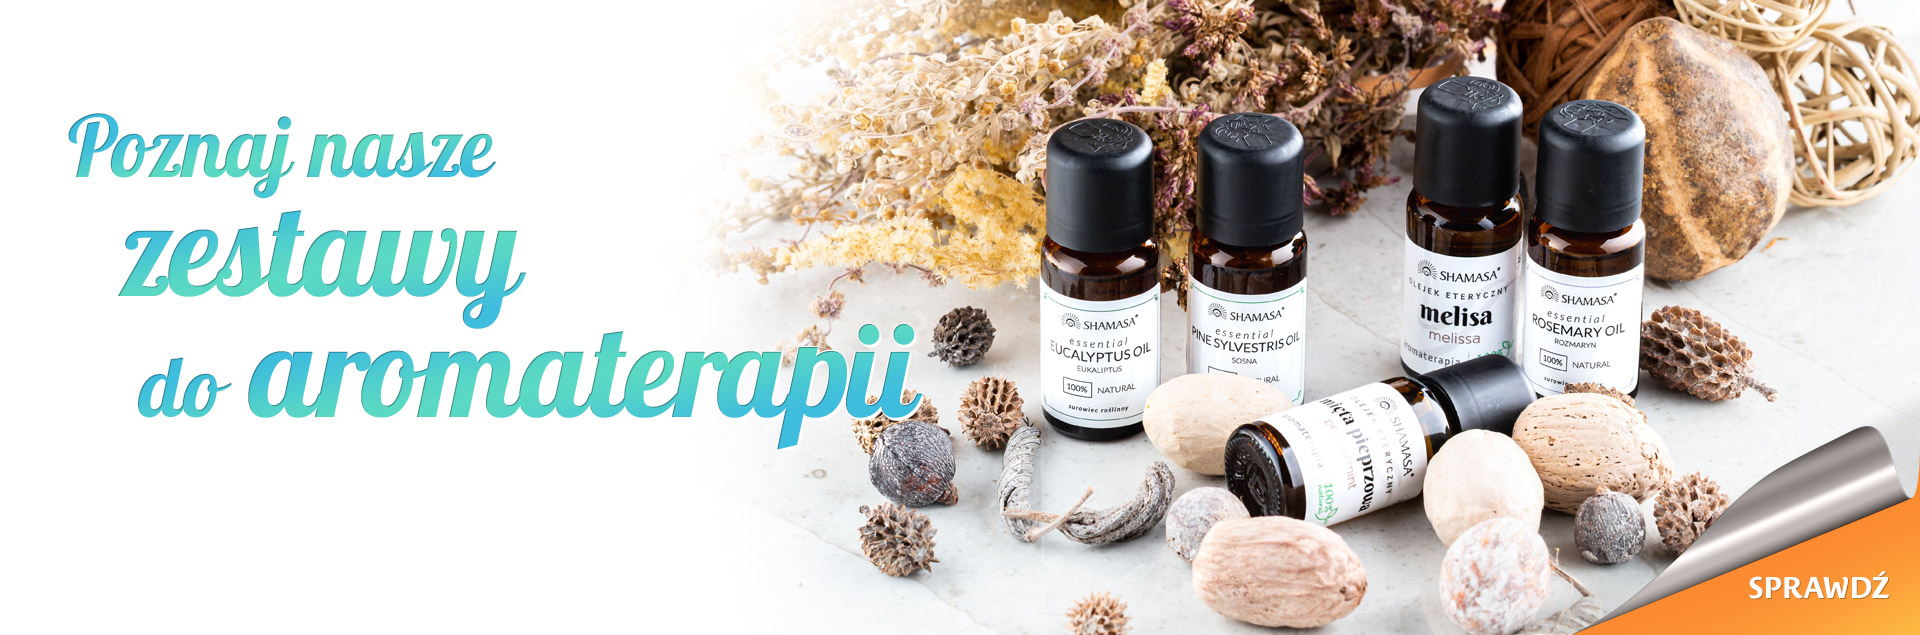 Poznaj nasze zestawy do aromaterapii